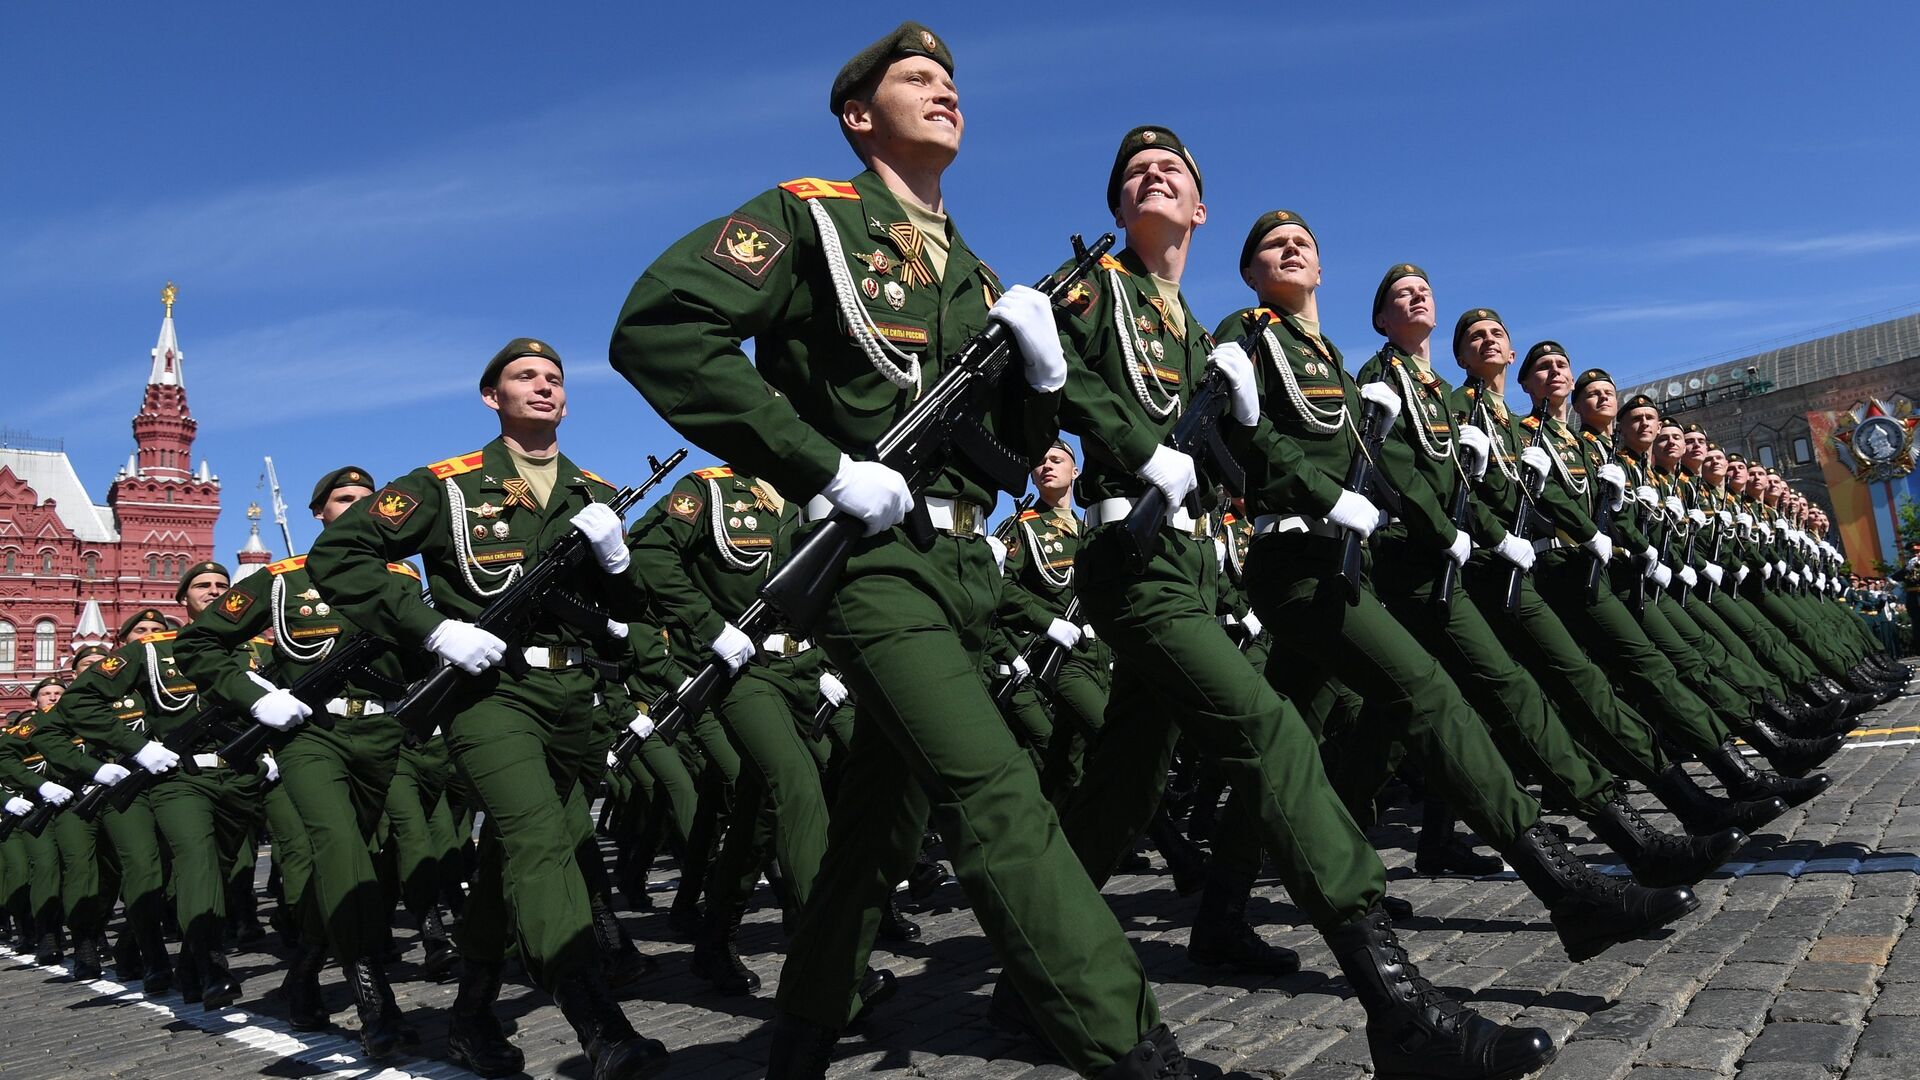 Песня солдаты на парад. Военный парад. Российский солдат на параде. Солдаты на параде. Русские солдаты на параде.